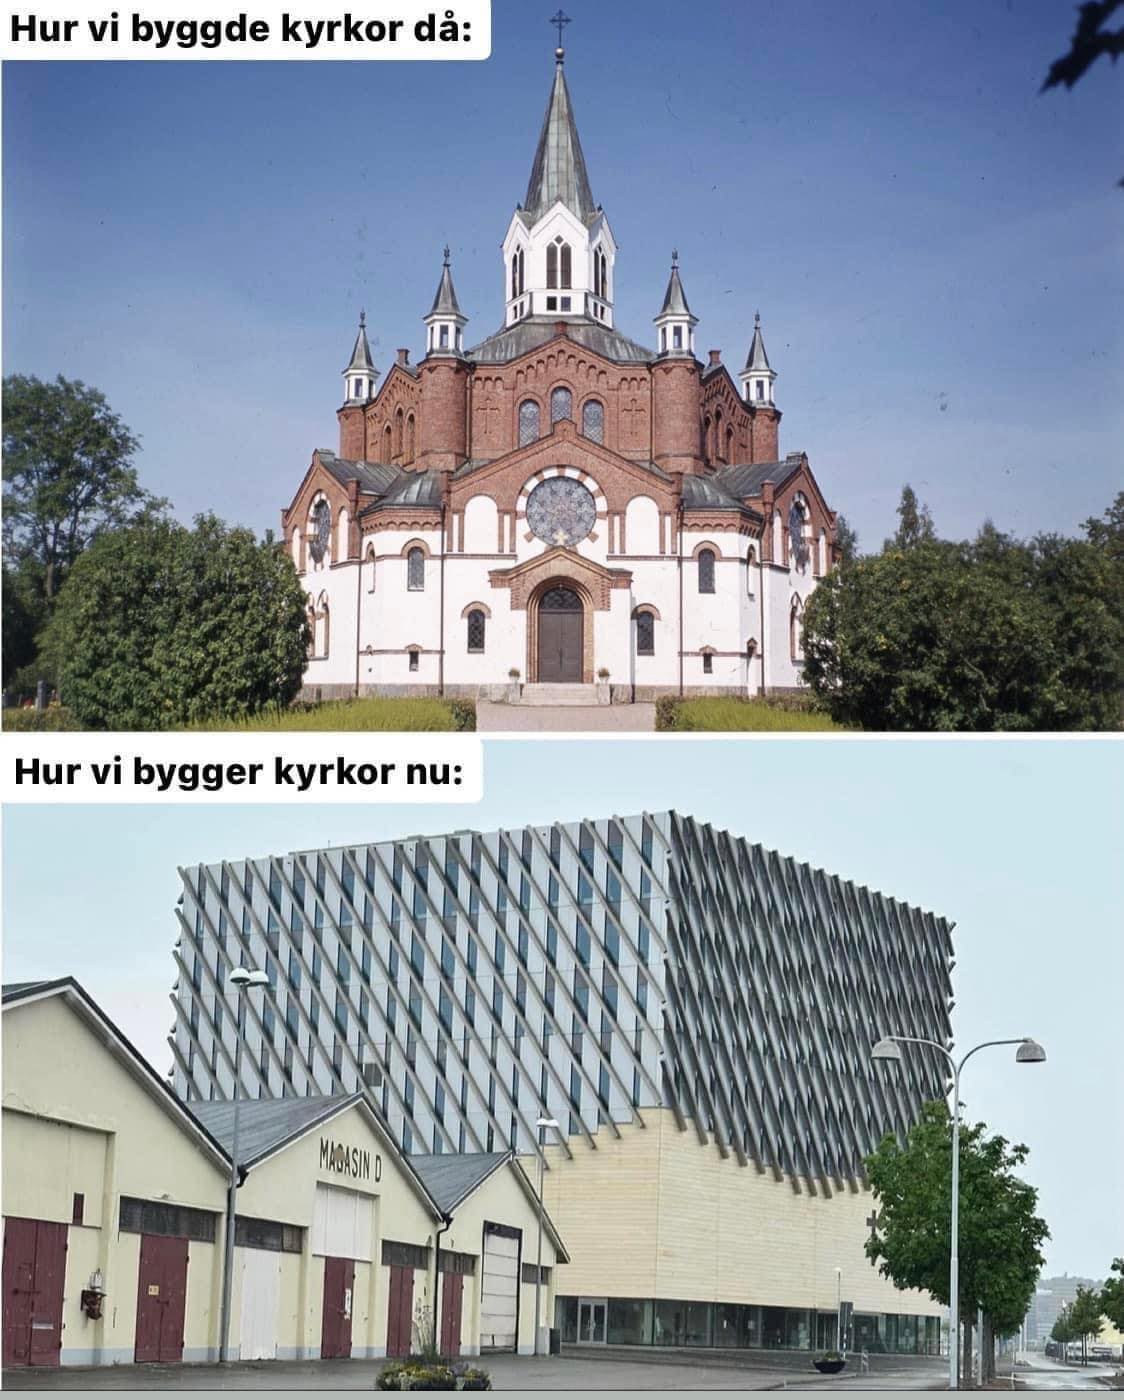 Denna jämförelse illustrerar det absurda med dagens sätt att bygga kyrkor. Gud bevare oss, eller vad säger man? Bild: AU